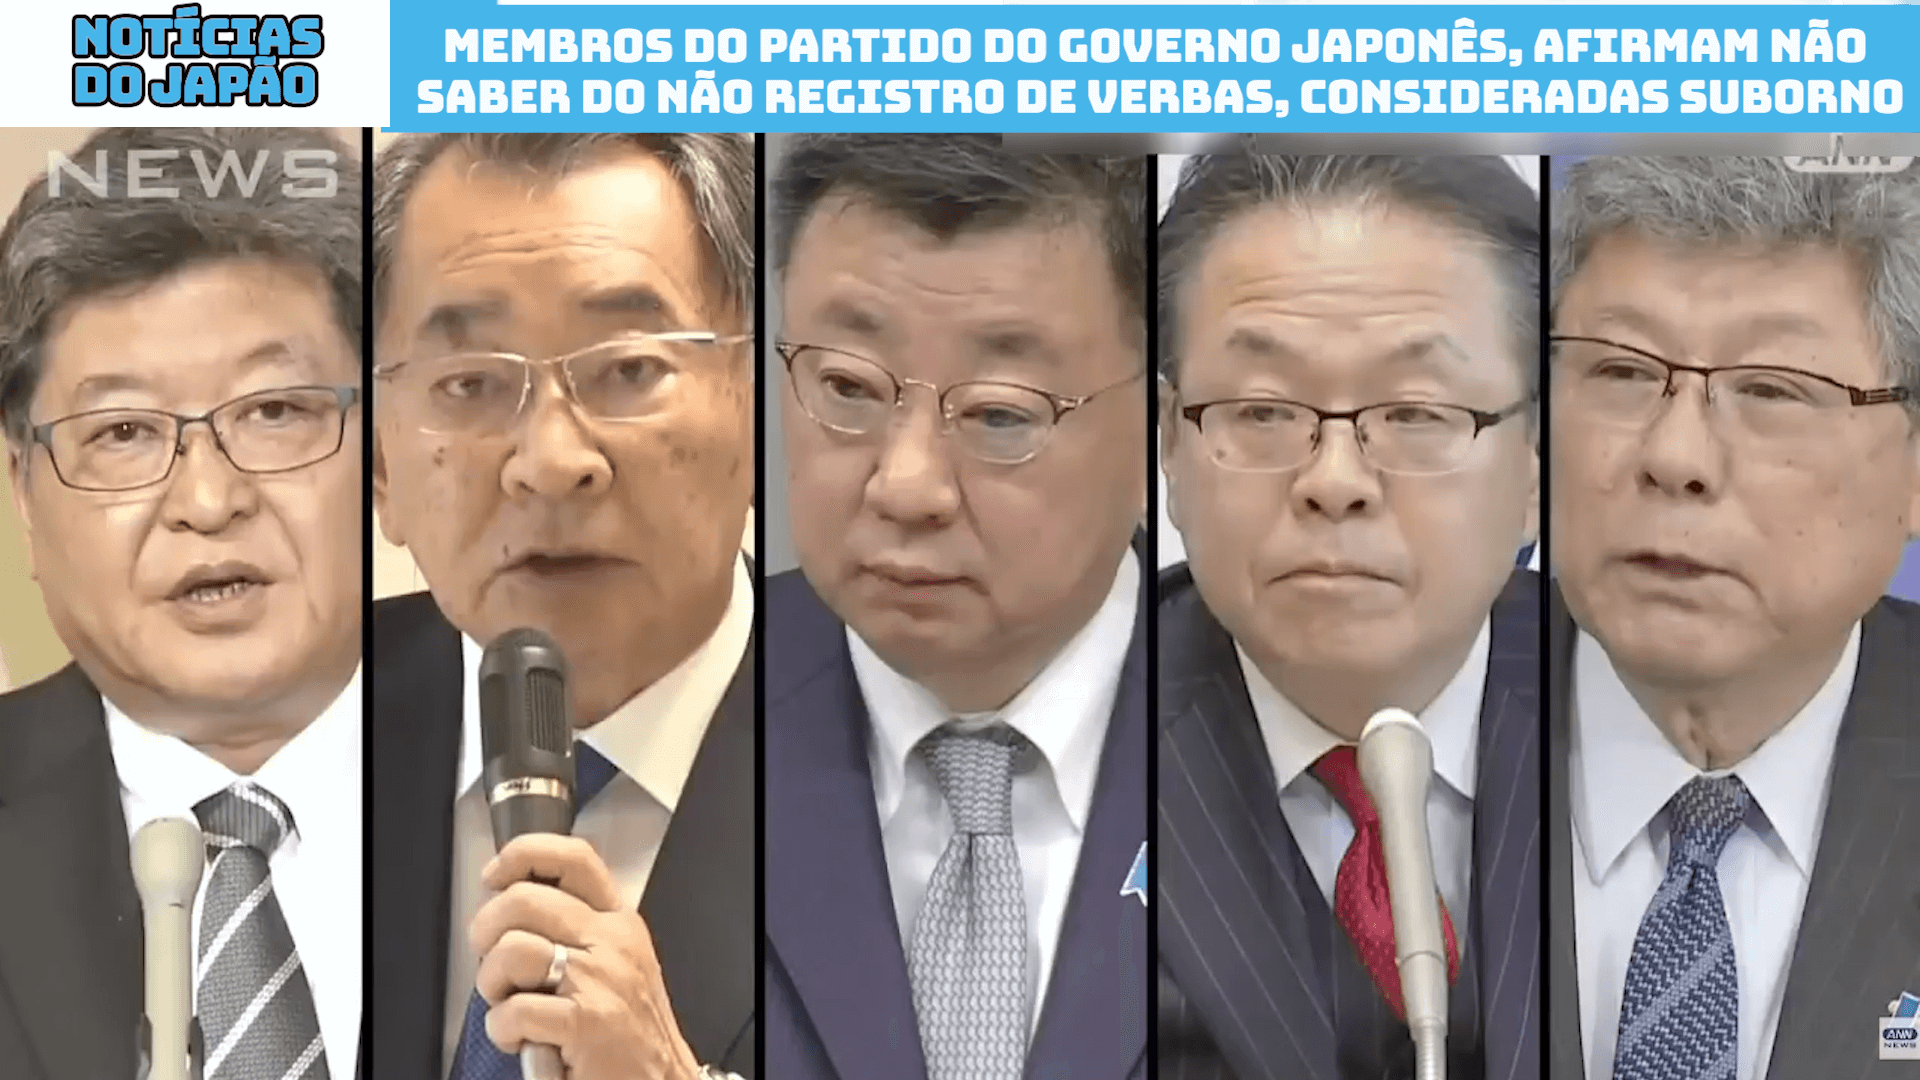 Membros do Partido do governo japonês, afirmam não saber do não registro de verbas, consideradas suborno 